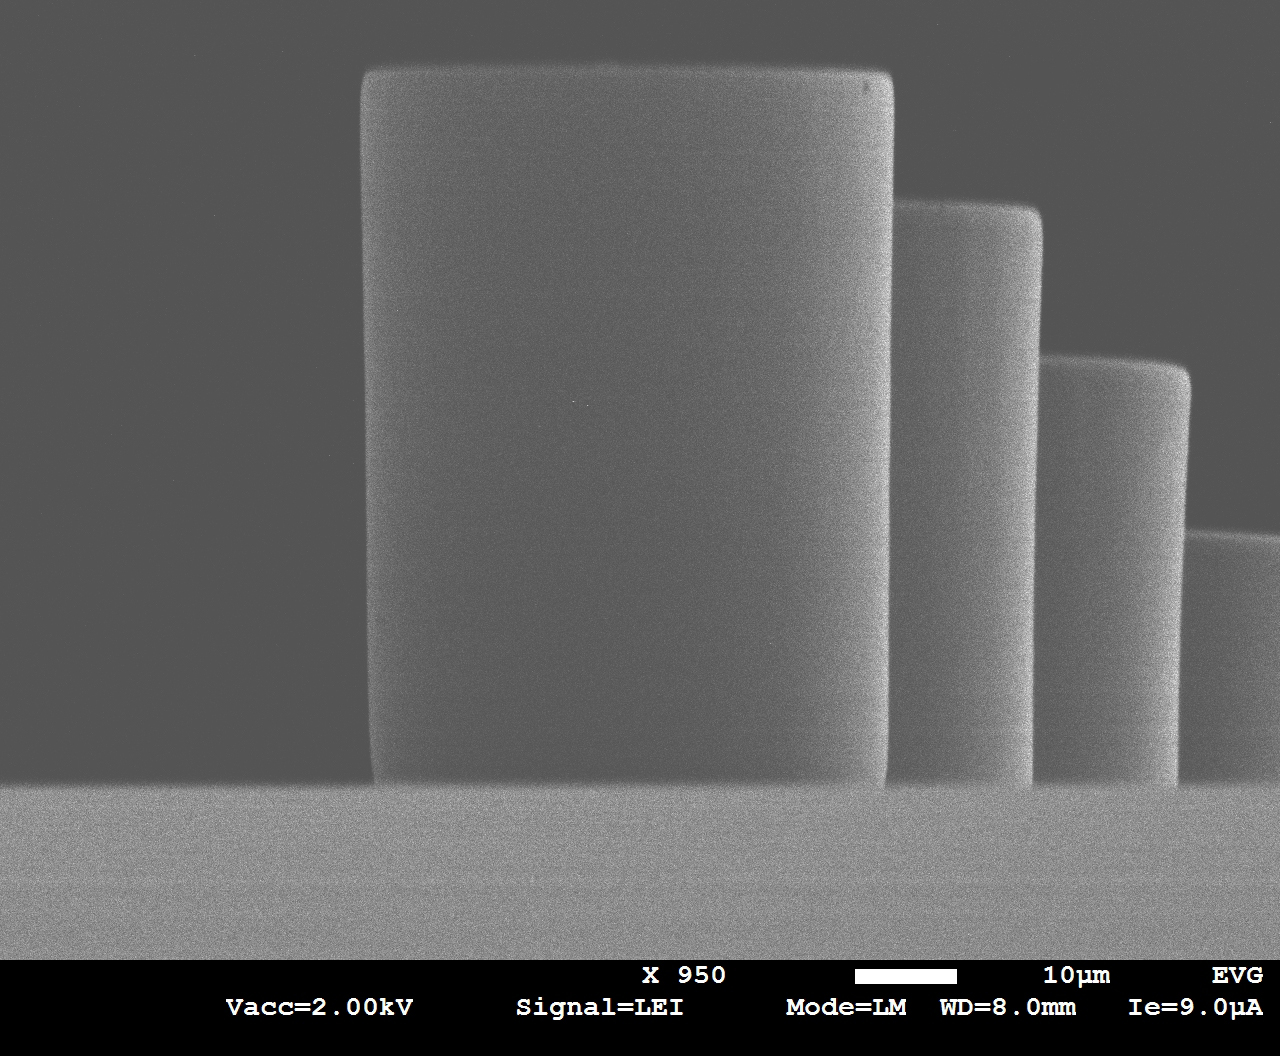 50 μm thick SU-8 exposed pillars, sidewall angle 90° +/- 0.5° utilizing optimized exposure & process methods